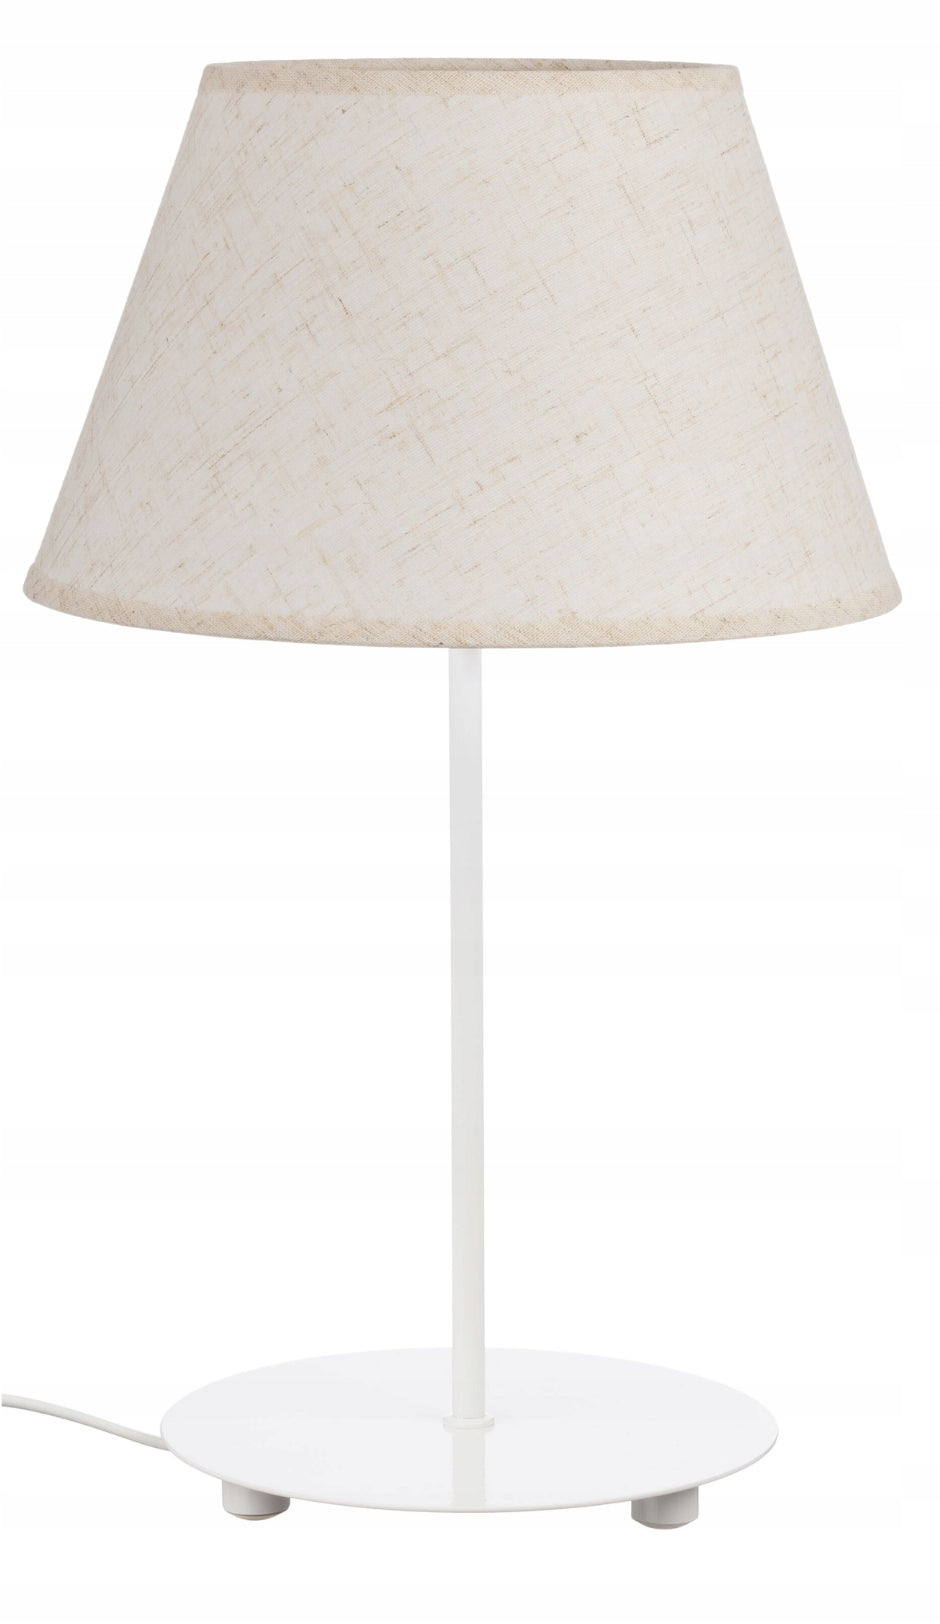 Hvit Bordlampe med Kjegleformet Lin Skjerm Karo E27